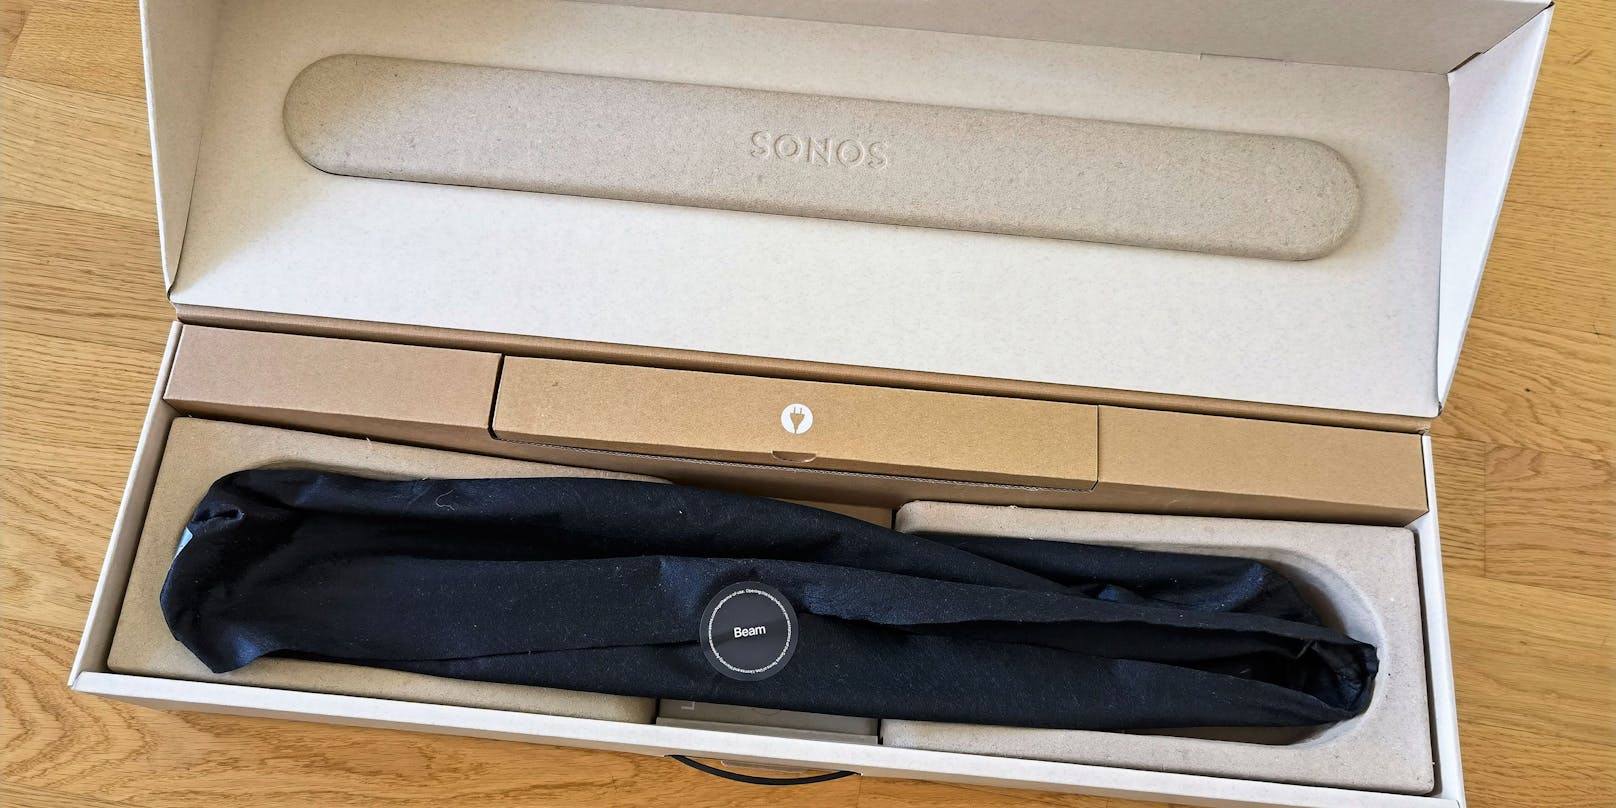 Bei der Verpackung setzt Sonos auf einen Karton aus 97 Prozent recyclebarem Papier ohne Einwegplastik.